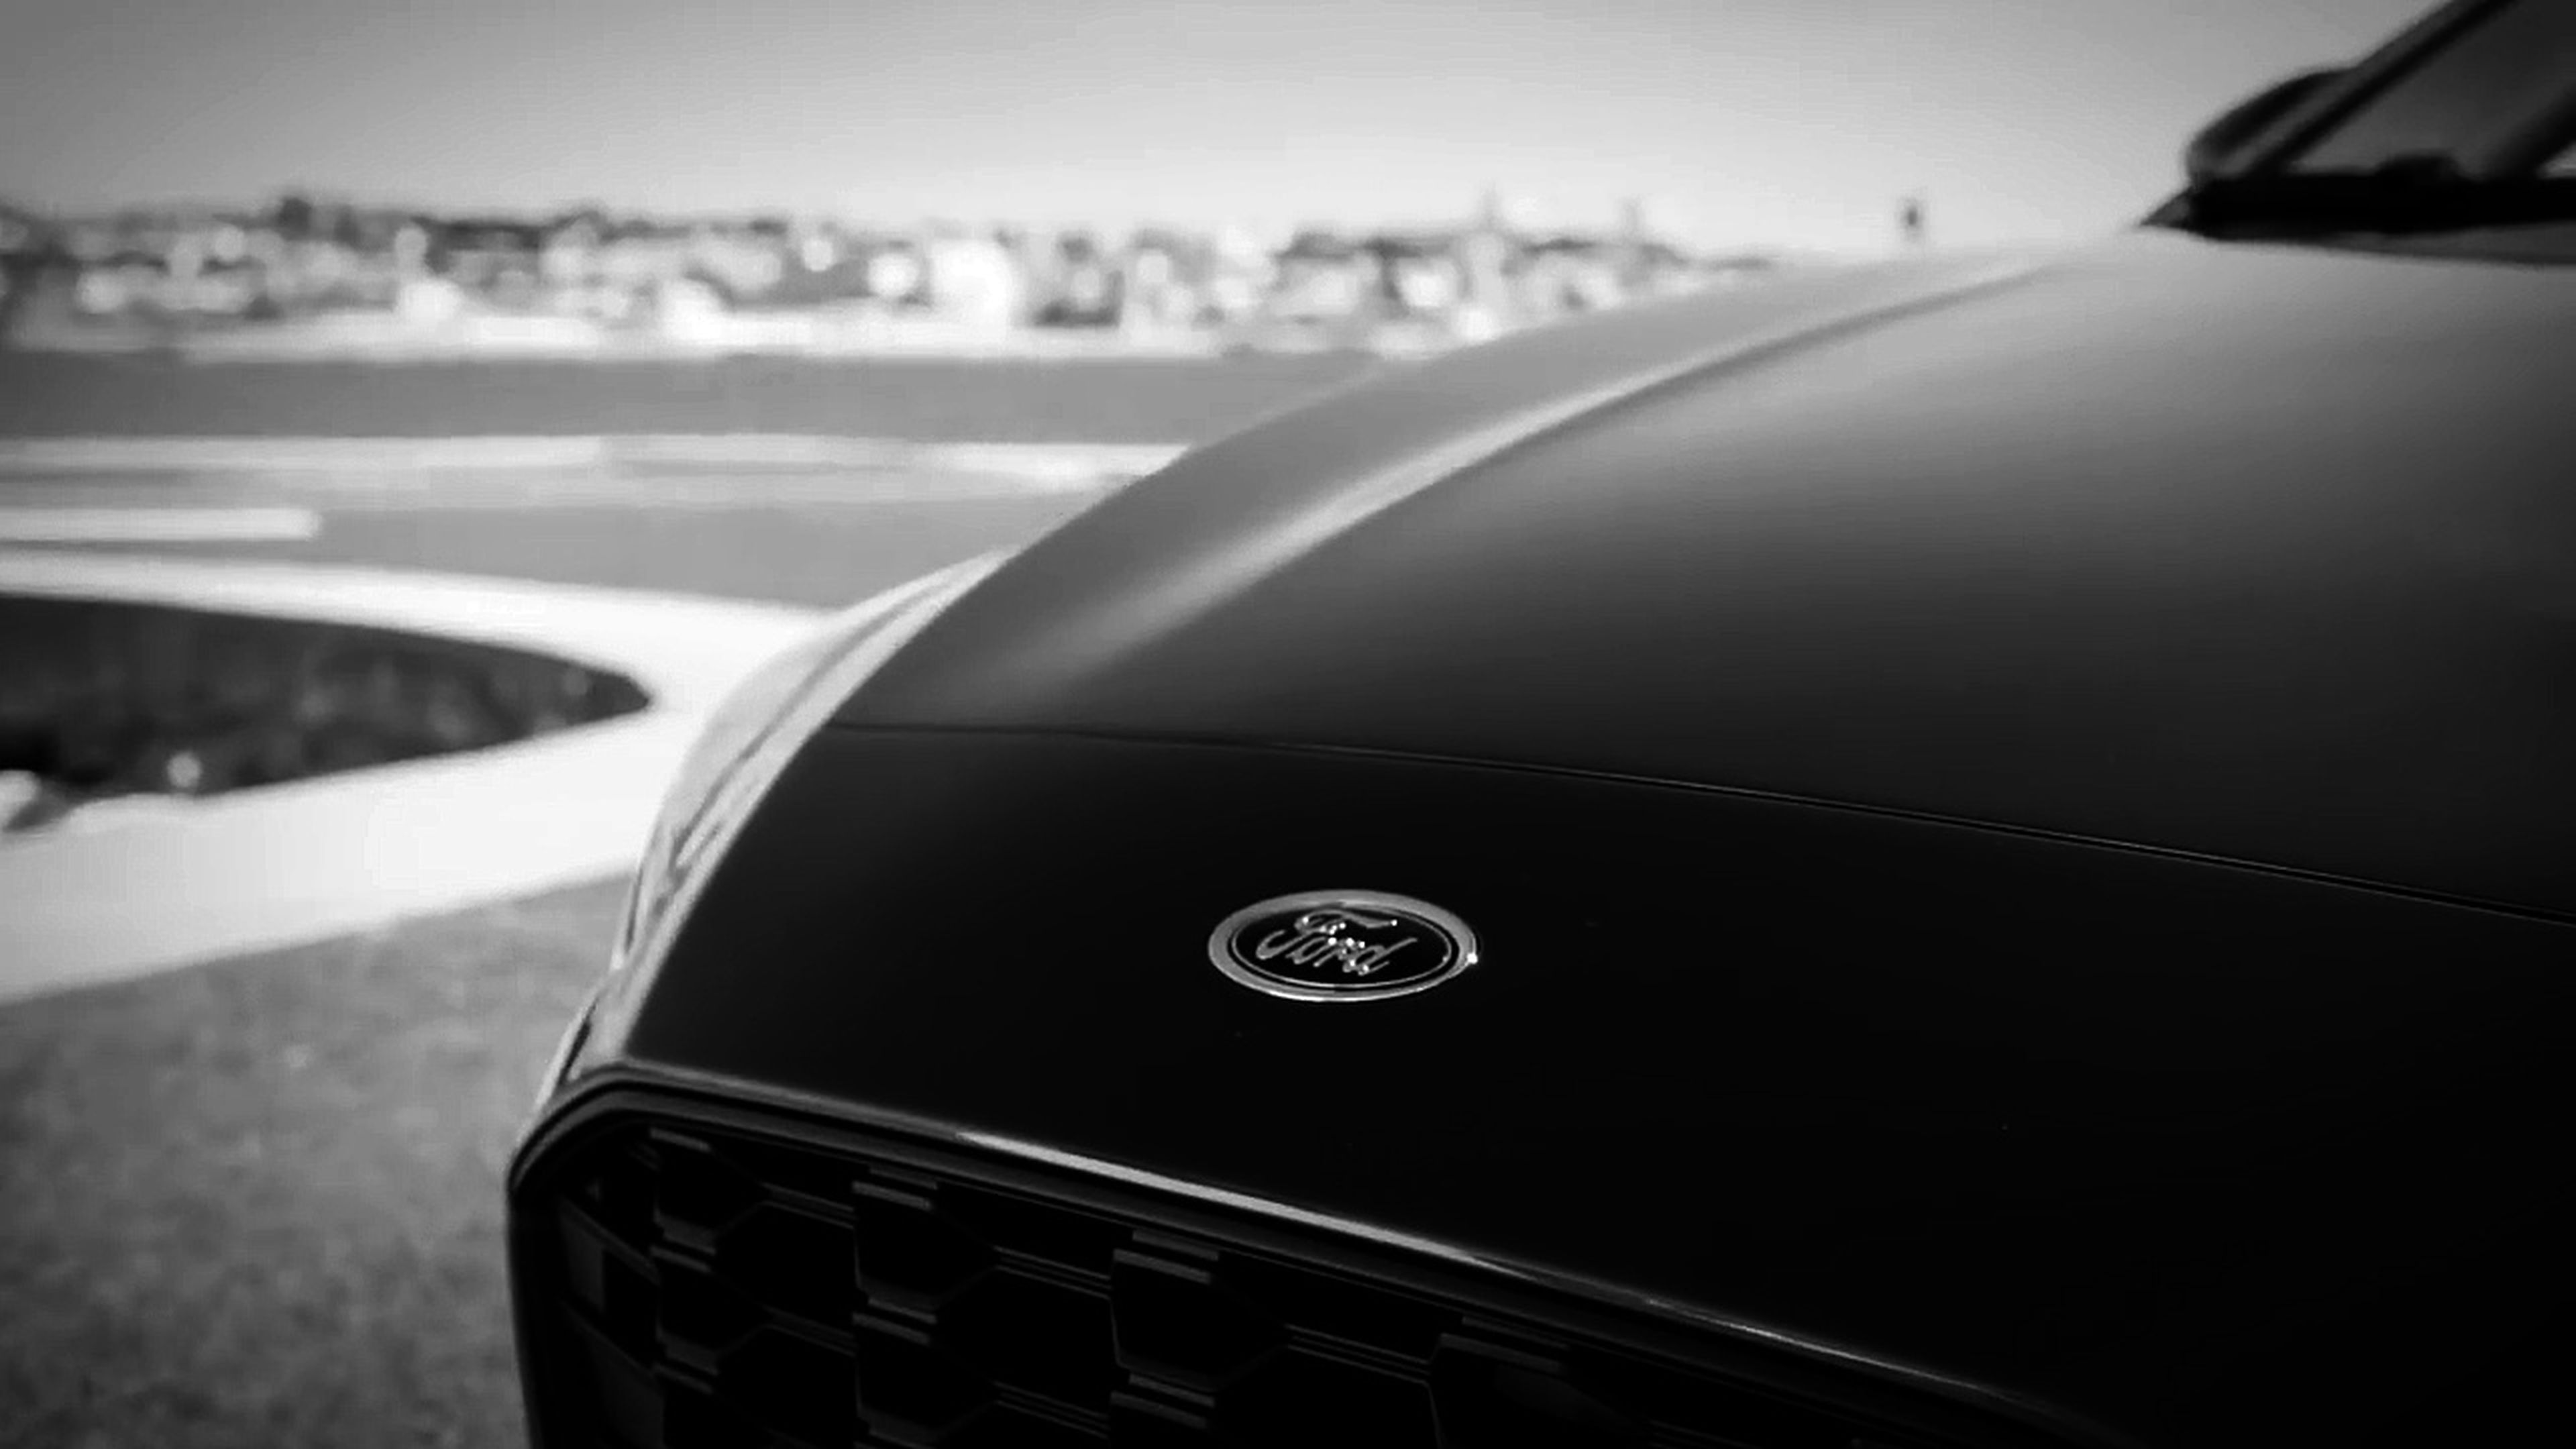 VÍDEO: Ford Focus 2018, este es el primer teaser